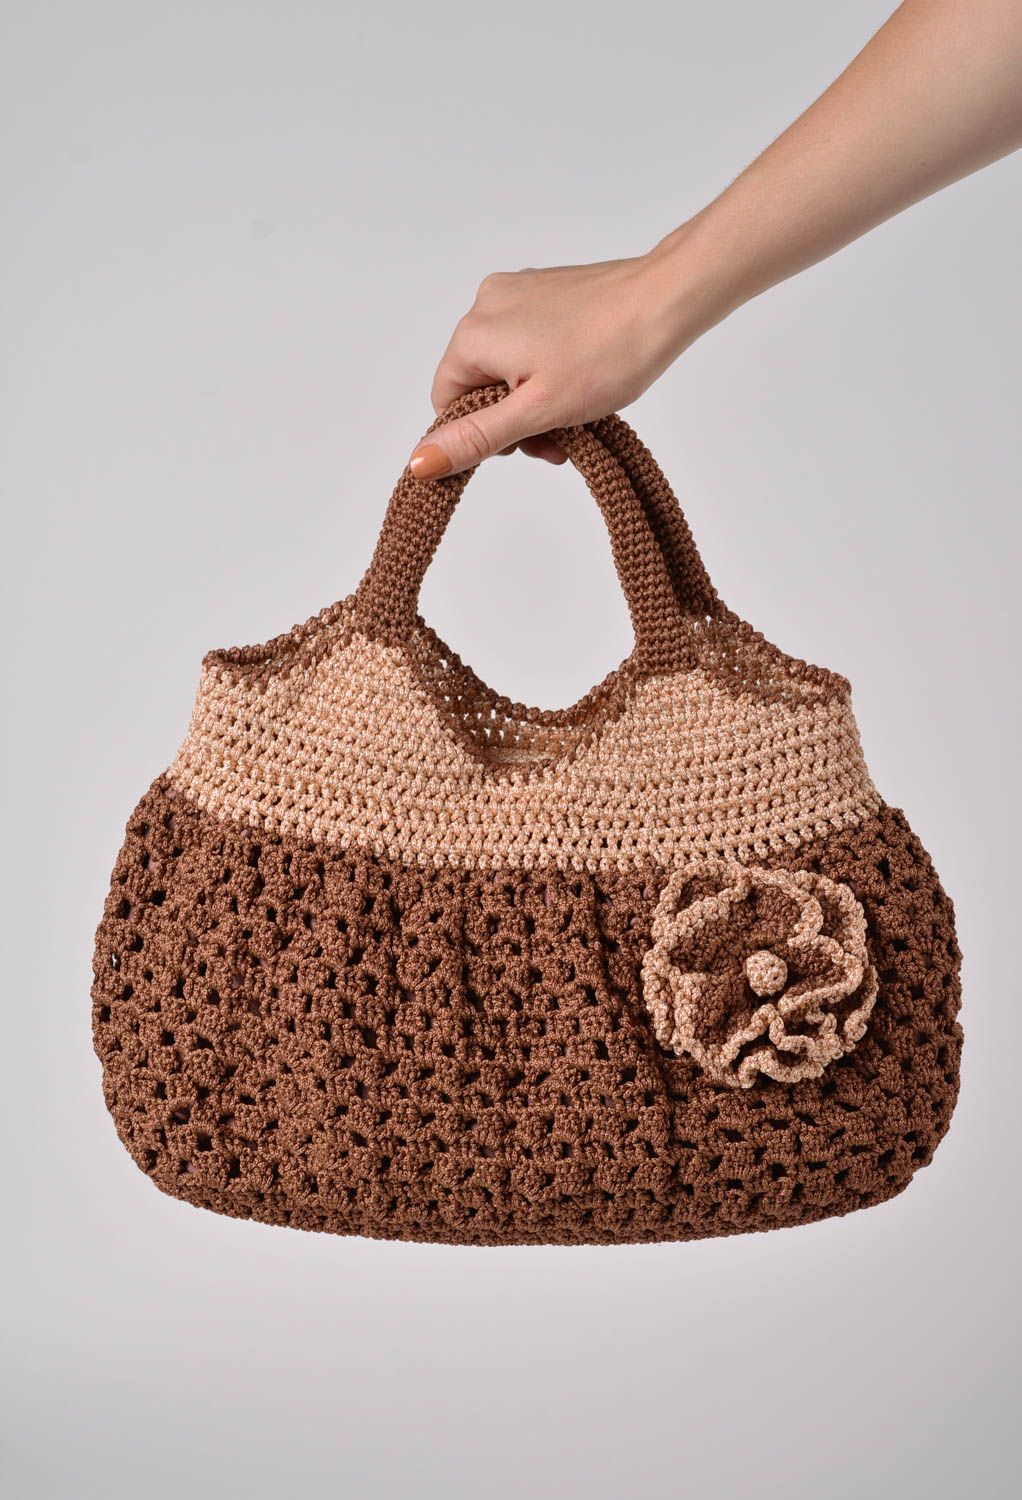 Вязаная женская сумочка крючком коричневая с бежевым с подкладкой ручная работа фото 2